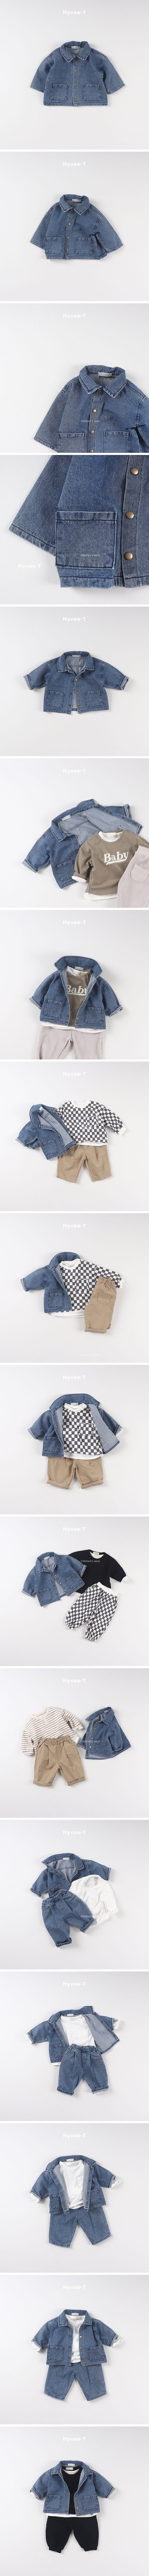 Hyvaa - Korean Children Fashion - #todddlerfashion - Daily Denim Jacket - 2